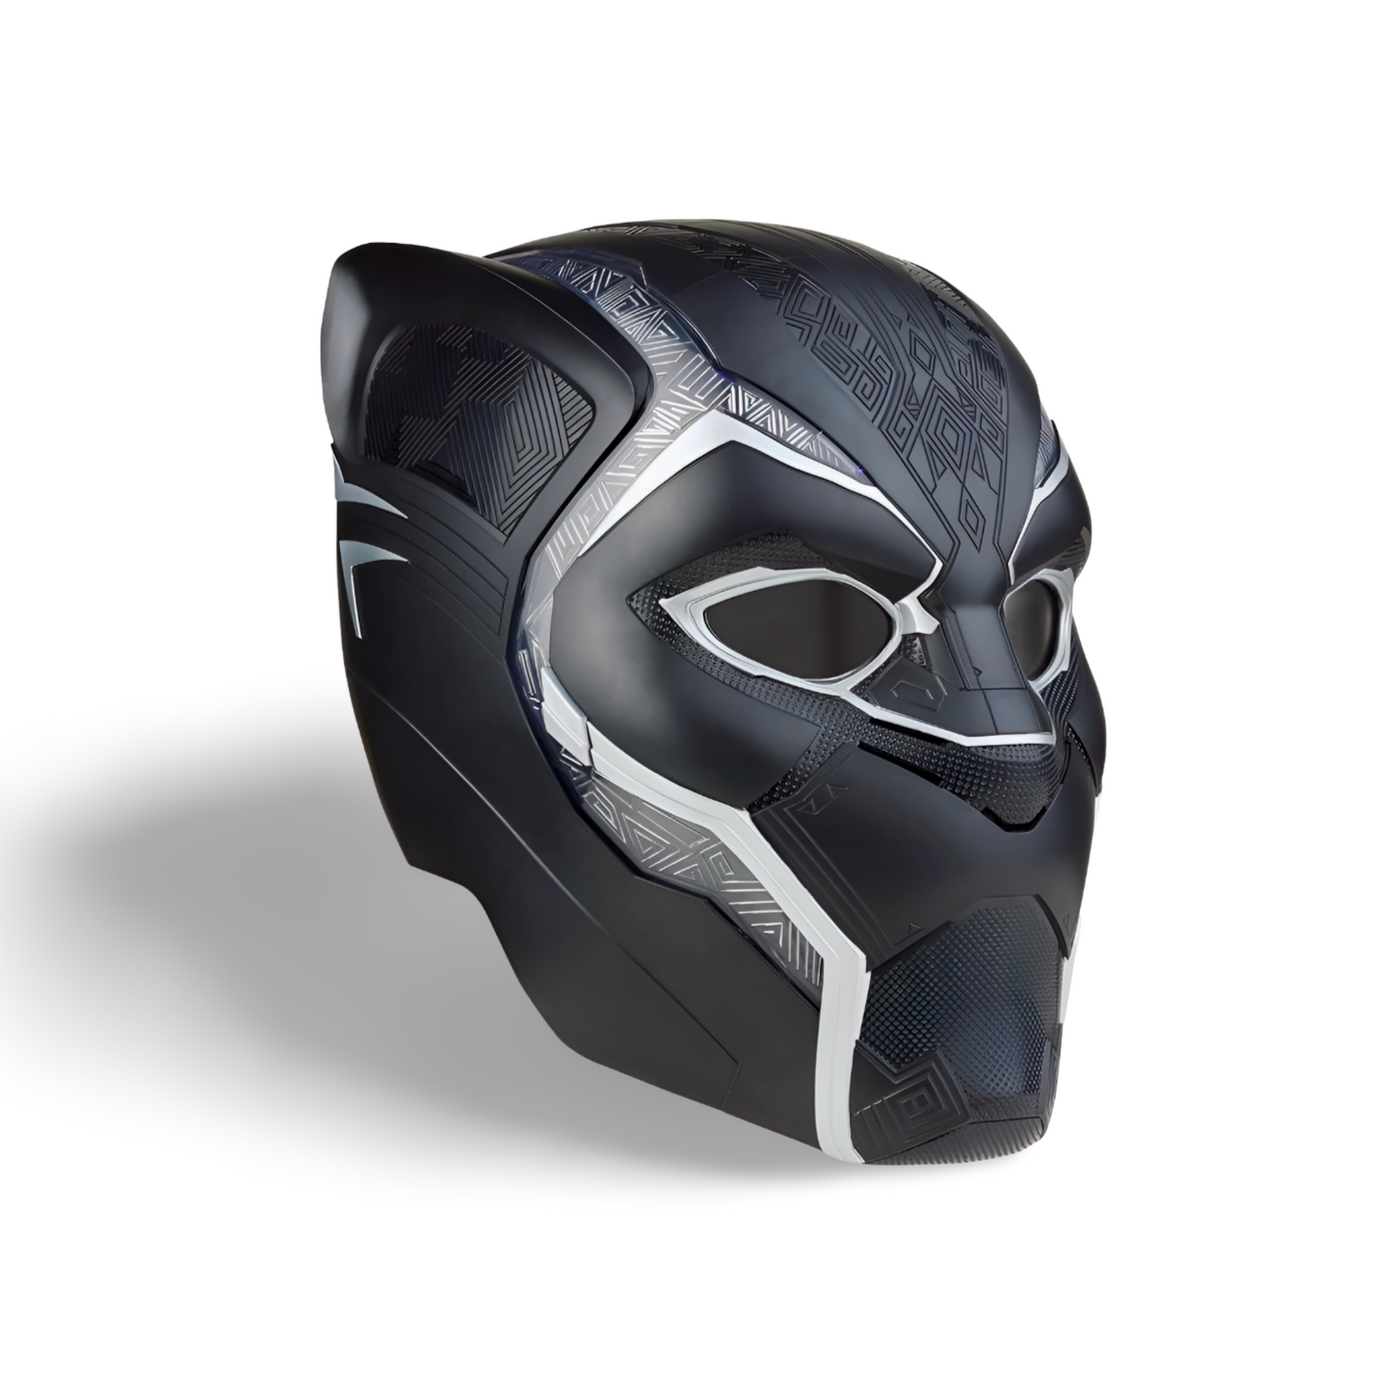 Marvel Legends Black Panther Electronic Roleplay Helmet